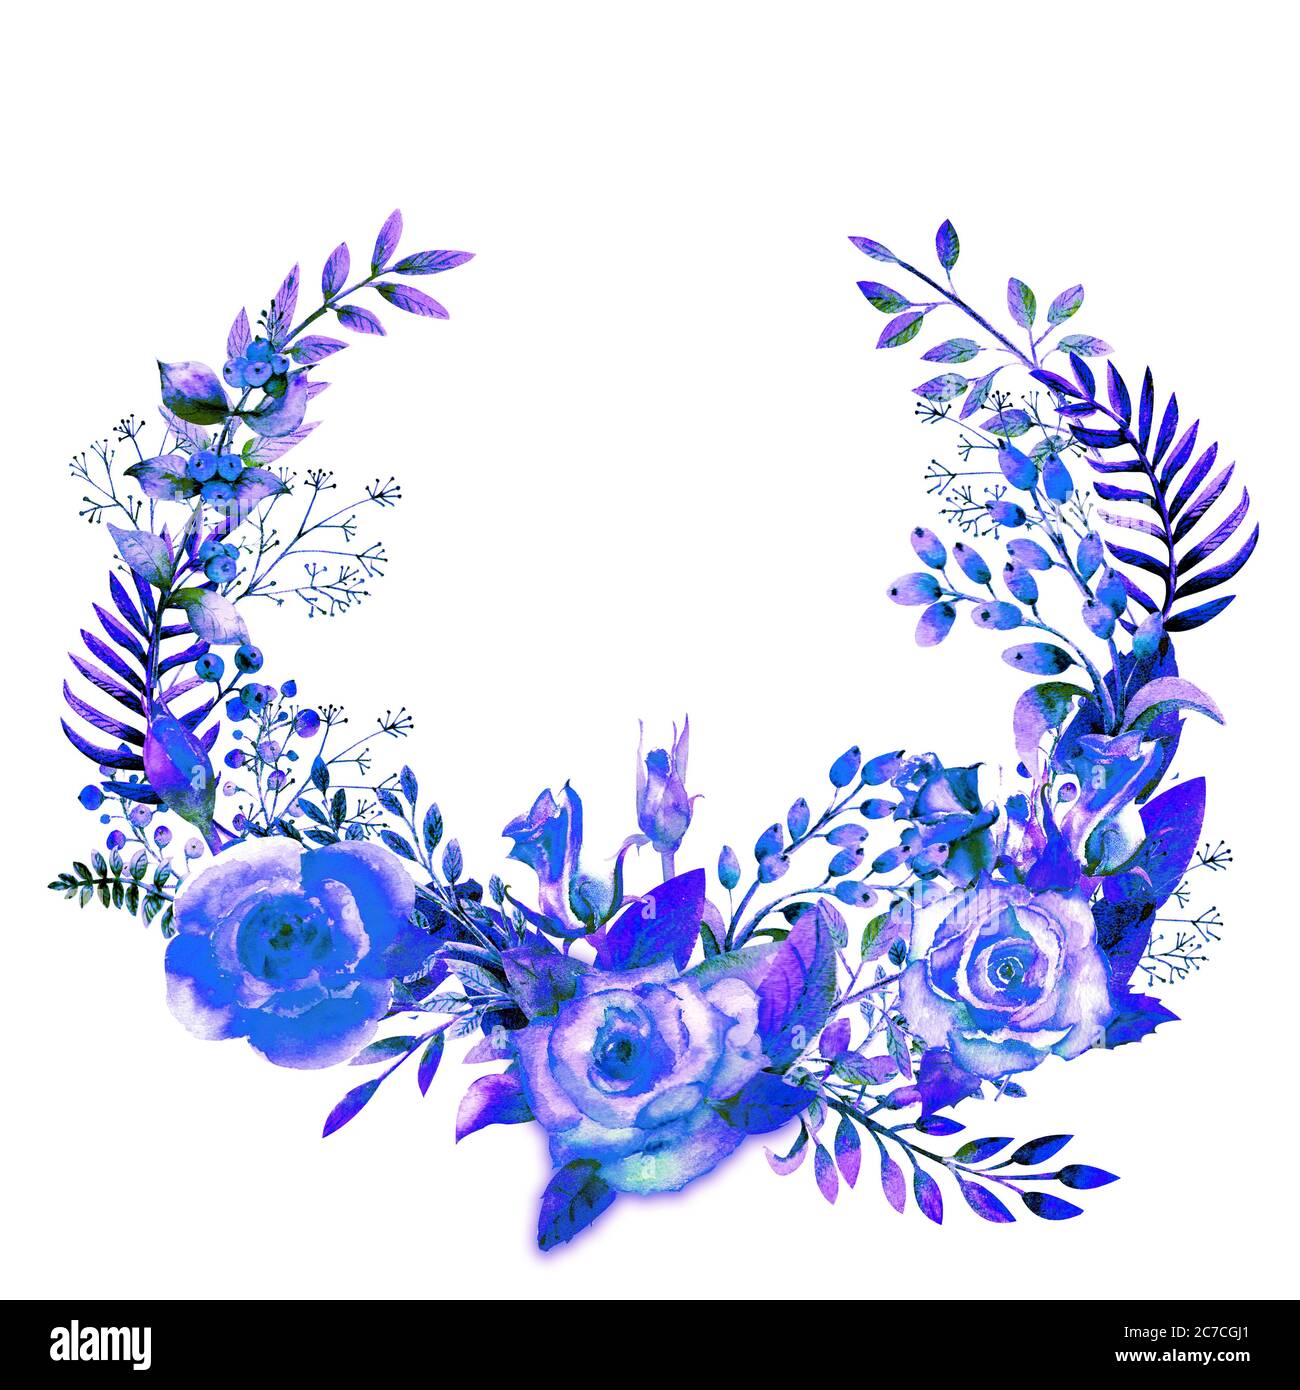 Kranz mit blauen Rosenblüten, Blättern, Zweigen. Hochzeitskonzept mit Blumen. Blumenplakat, Einladung. Aquarell Kompositionen für die Dekoration von Stockfoto